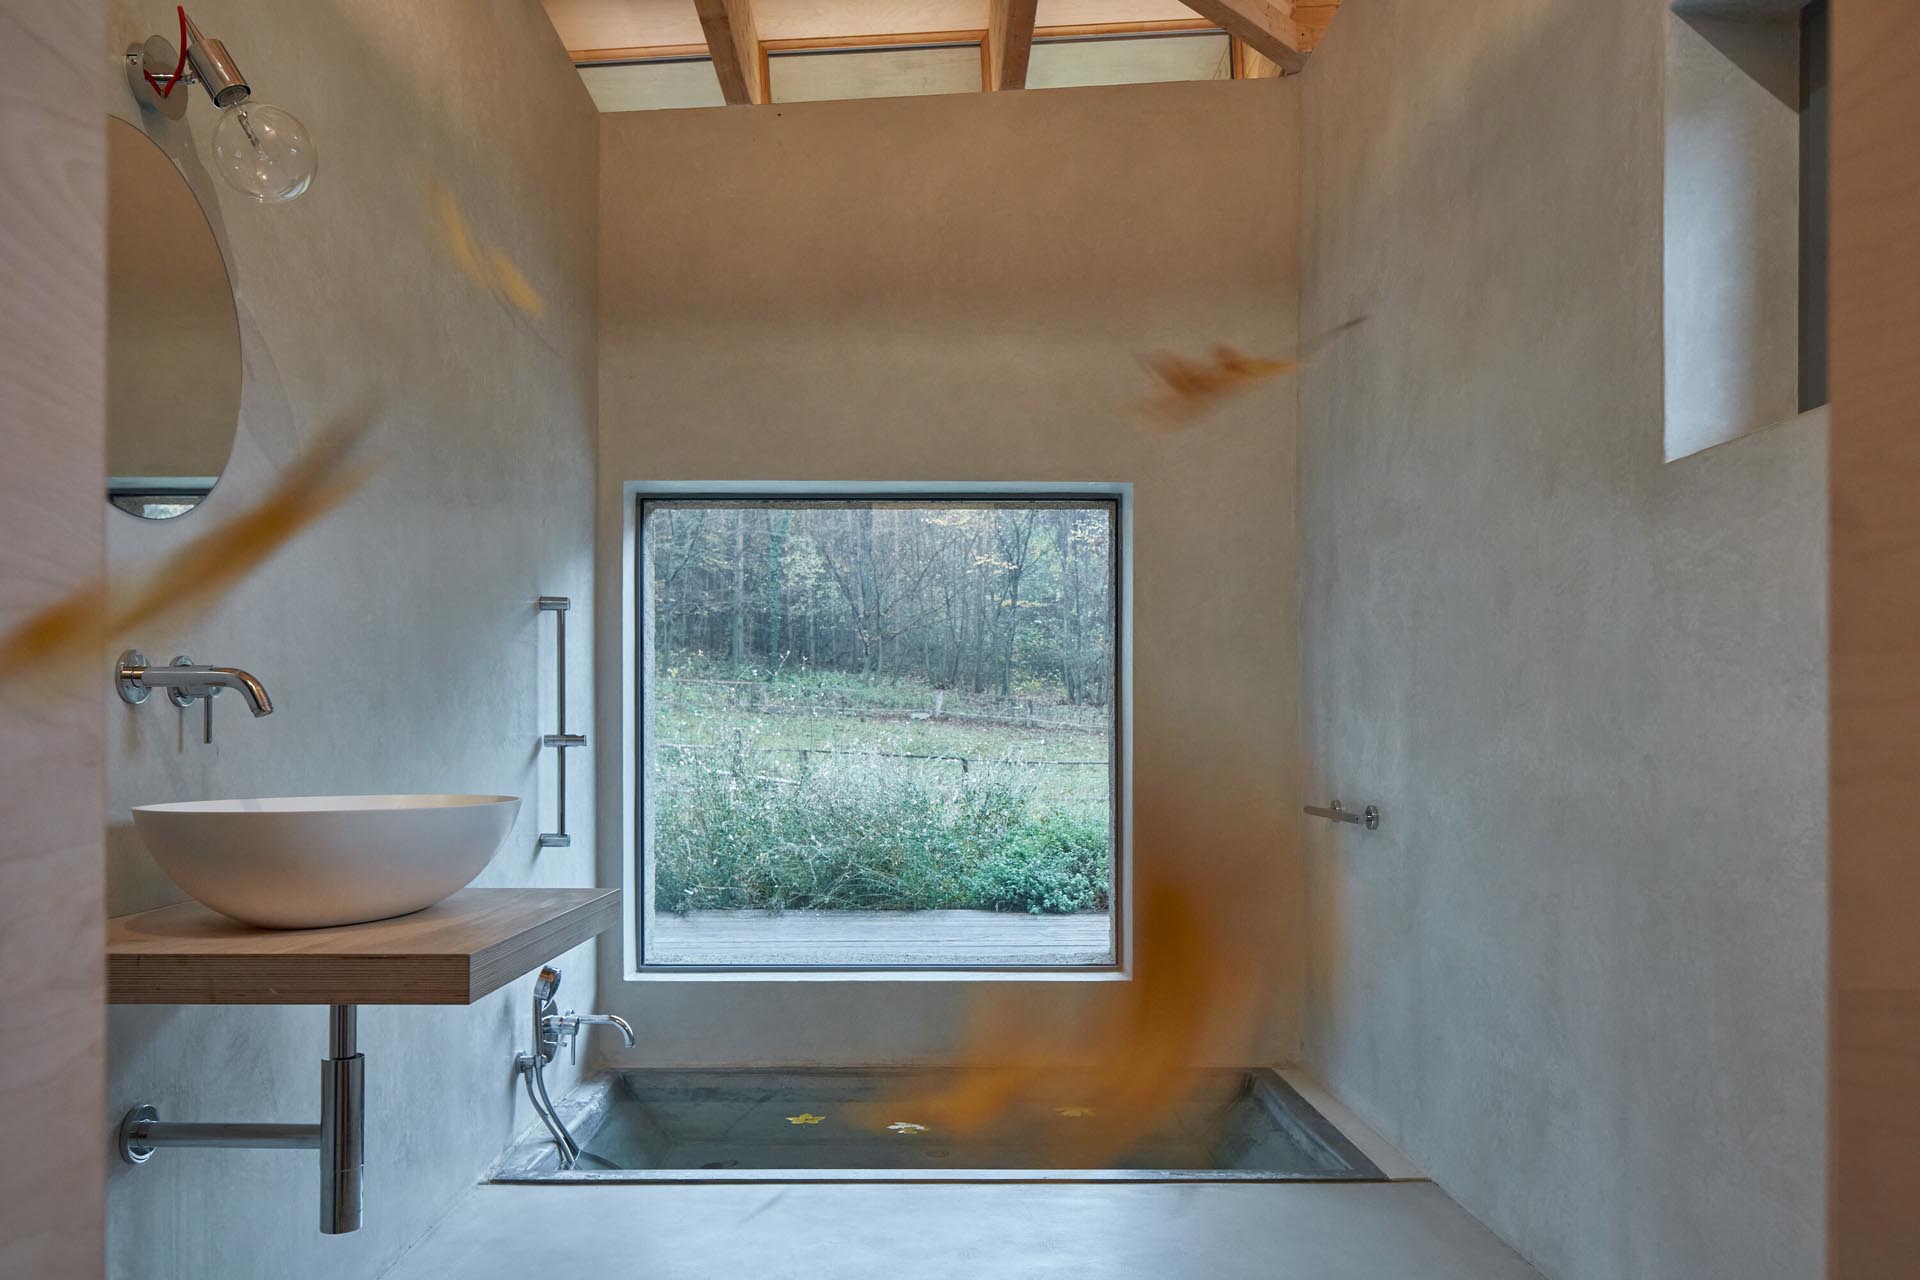 Эта современная ванная комната в каюте была разработана с встроенной ванной на уровне пола, минималистичным деревянным туалетным столиком и большим панорамным окном.